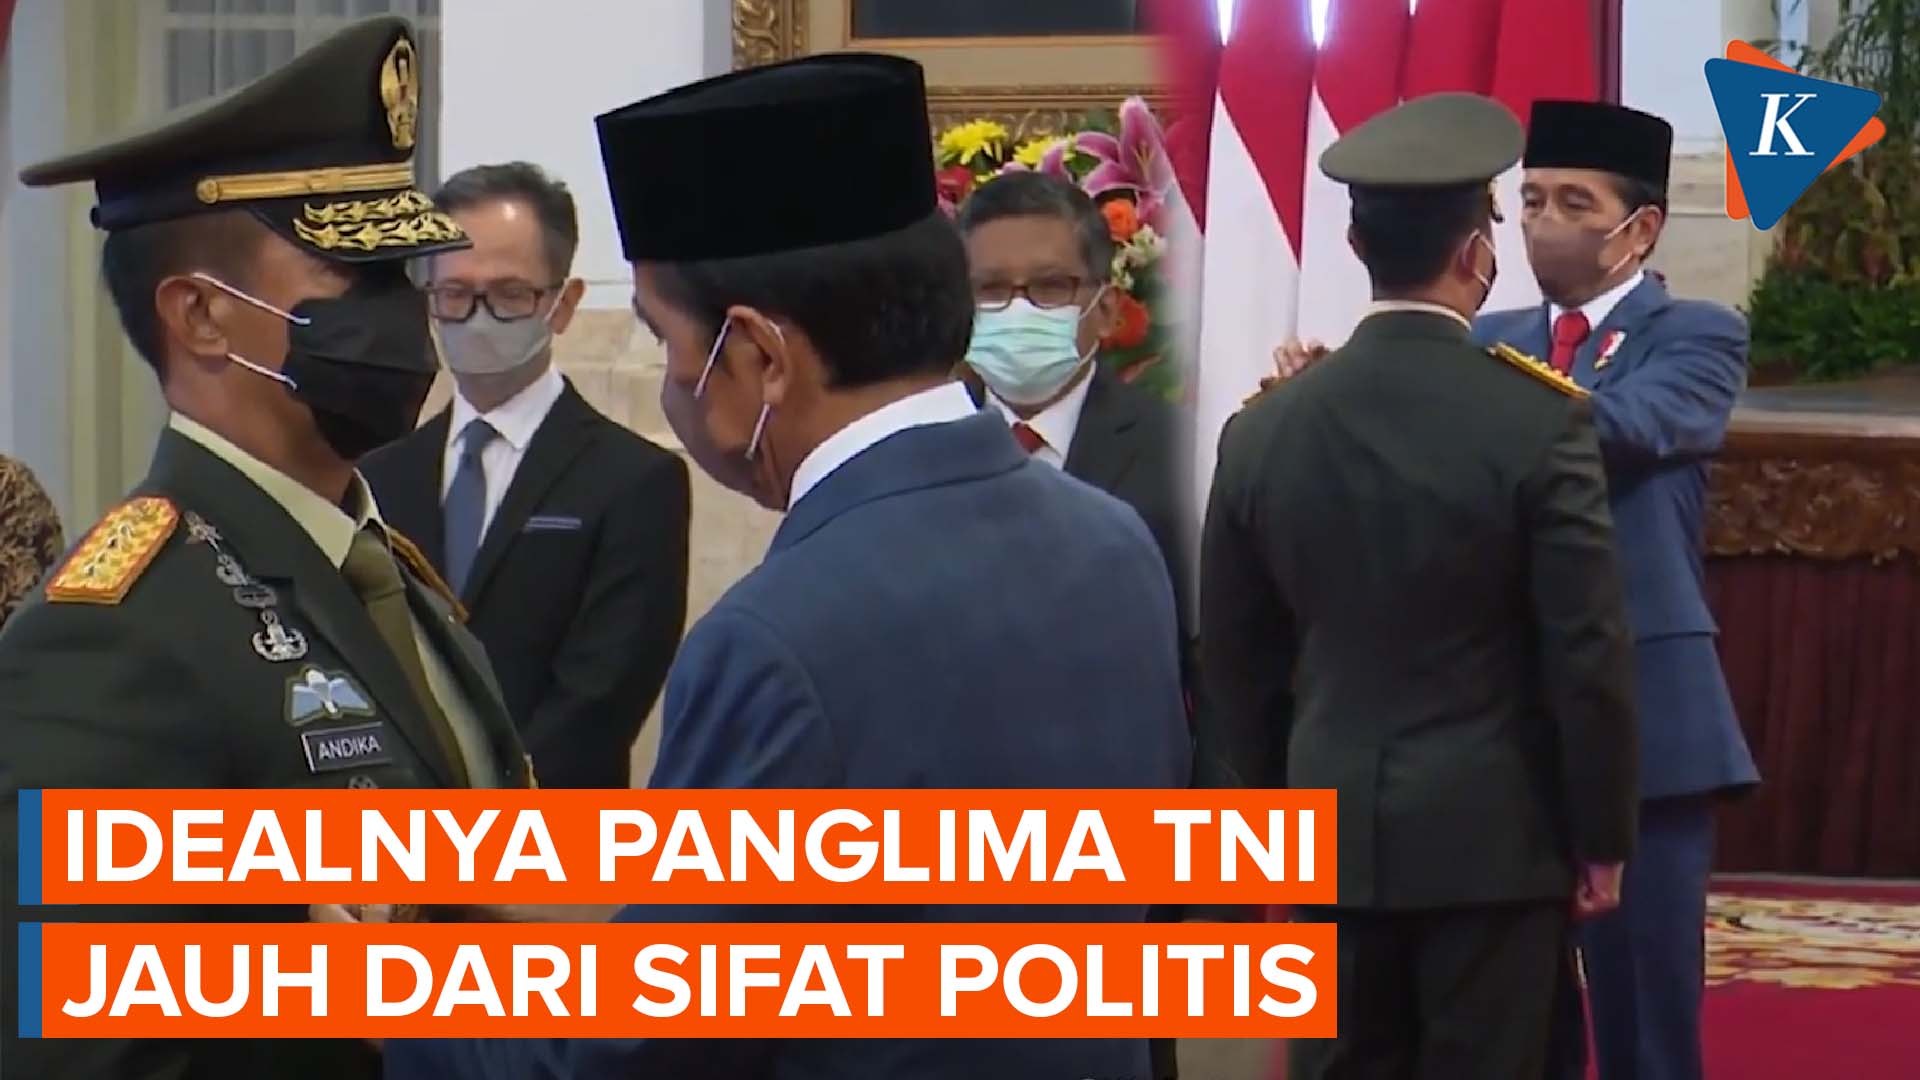 Pengamat Militer Harap Jokowi Pilih Calon Panglima TNI Jauh dari Kepentingan Politik